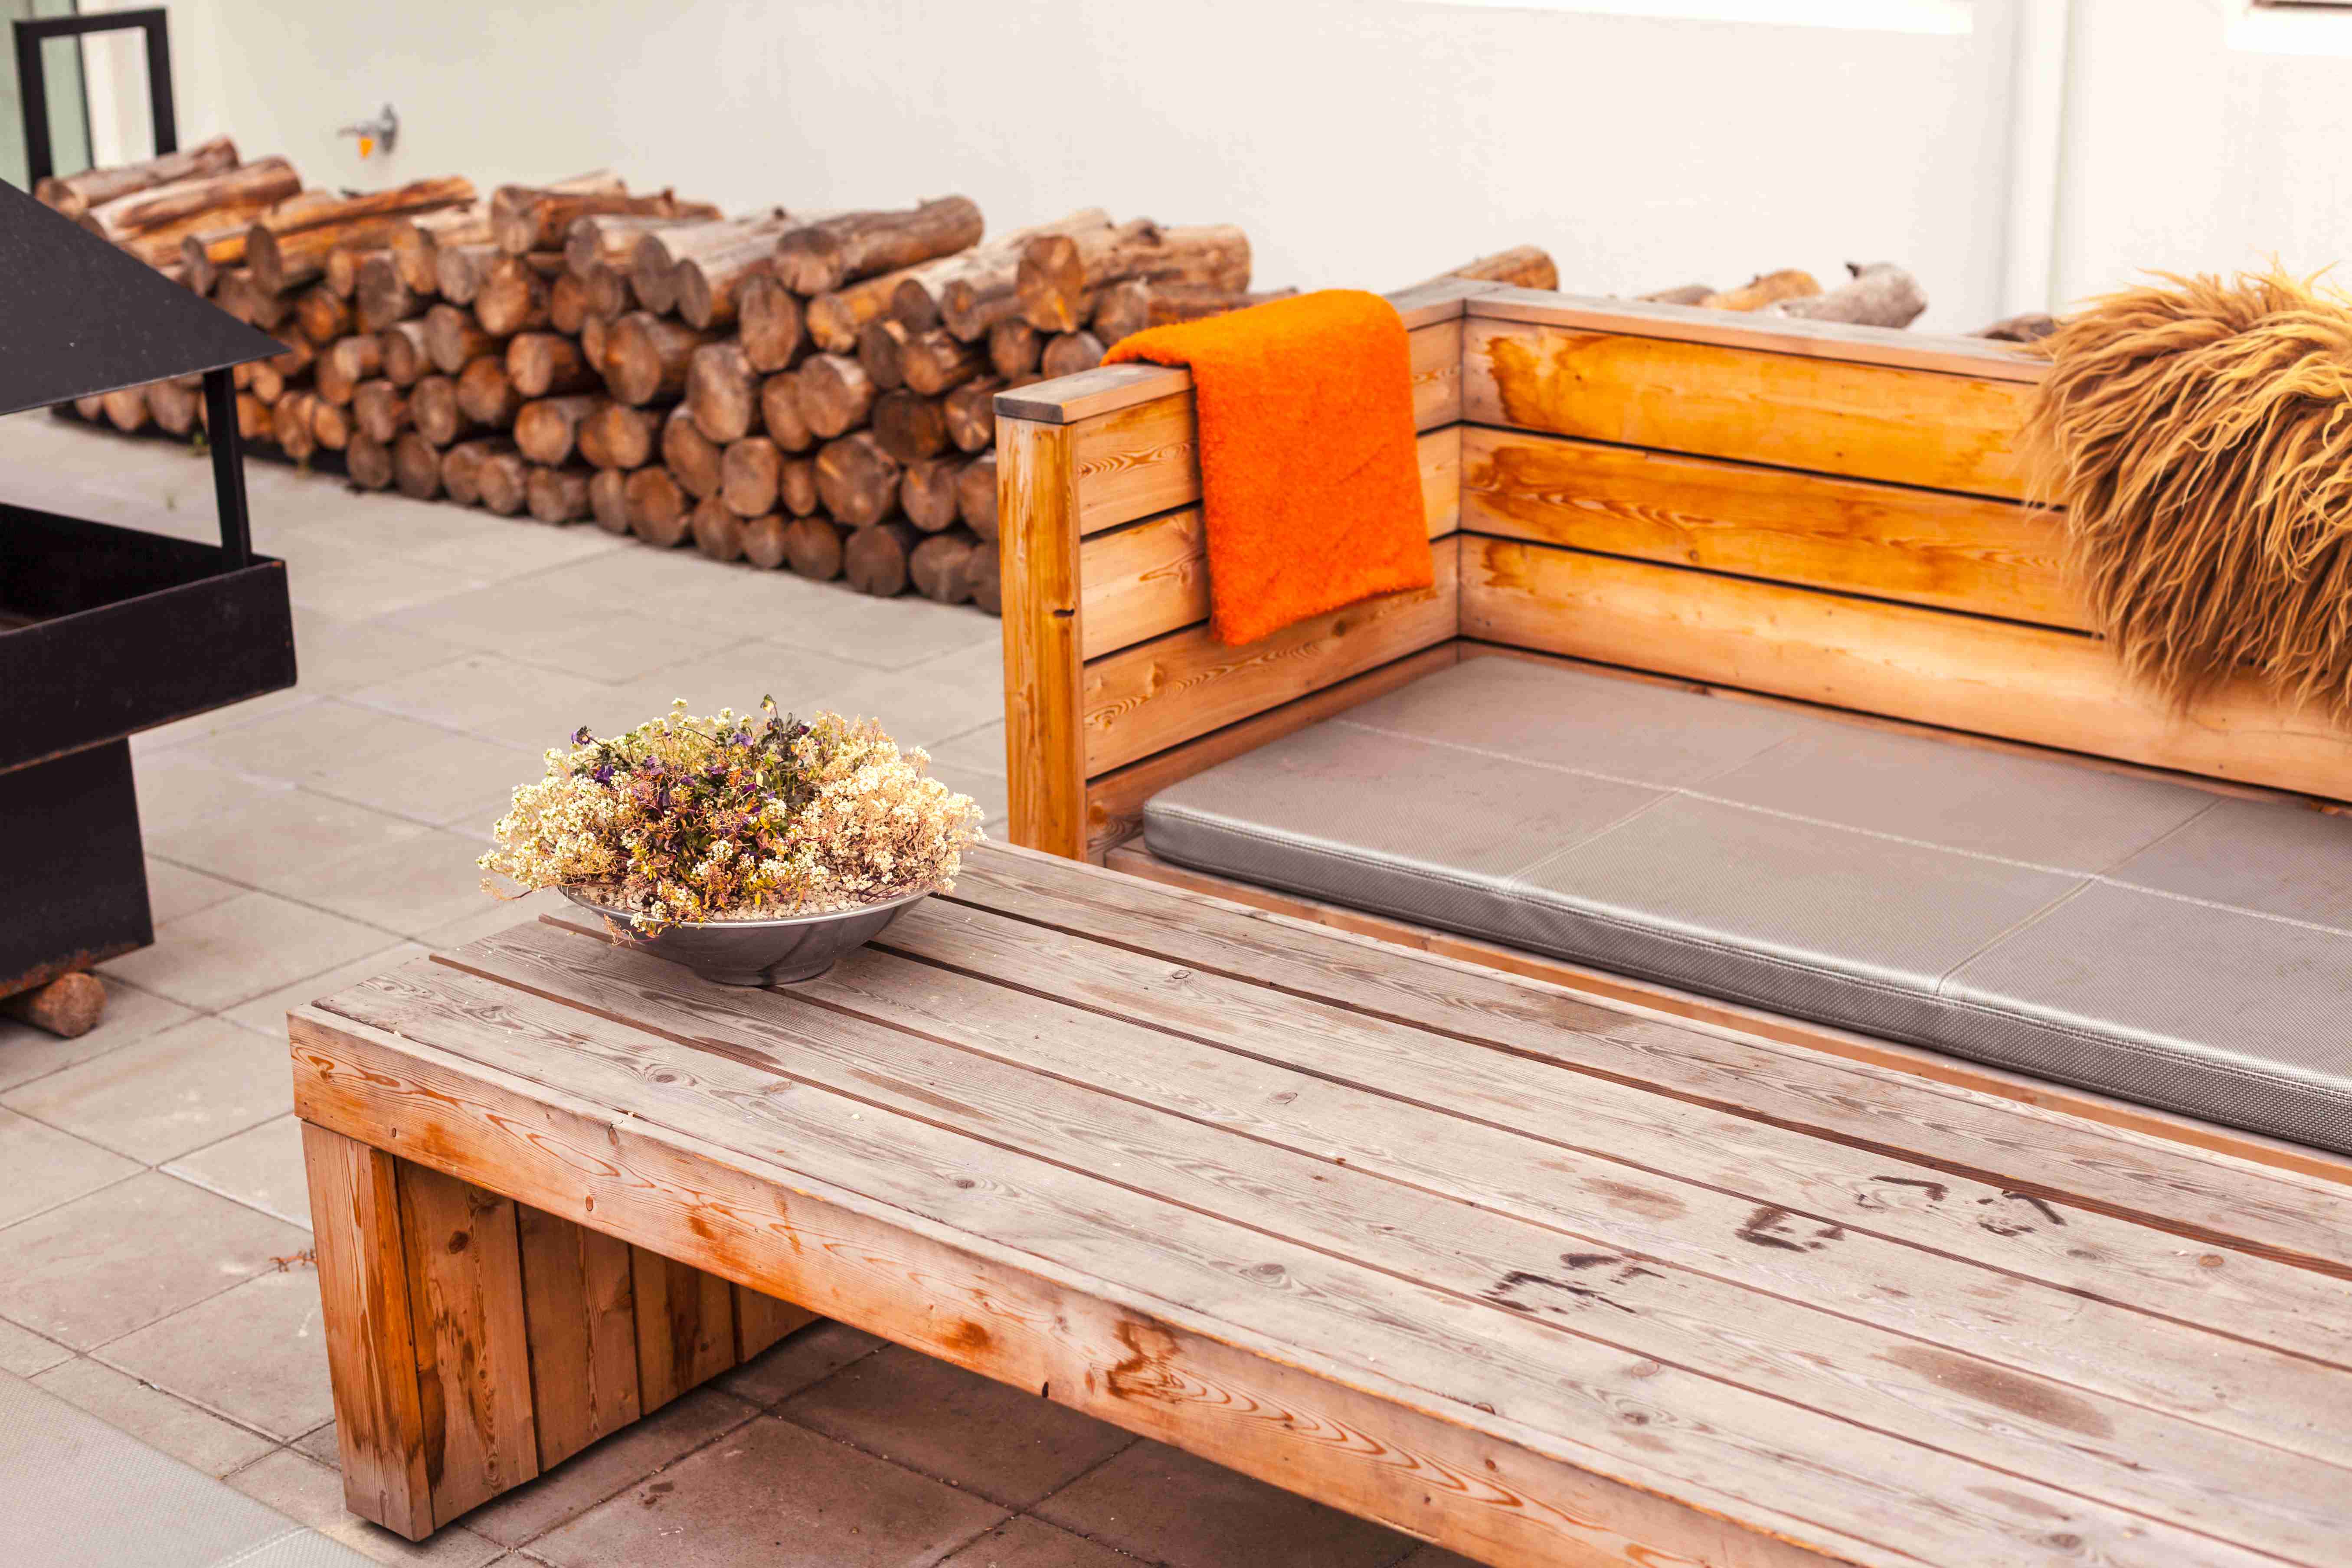 outdoor-restaurant-terrace-with-wooden-furniture-2021-09-04-04-18-48-utc.jpg